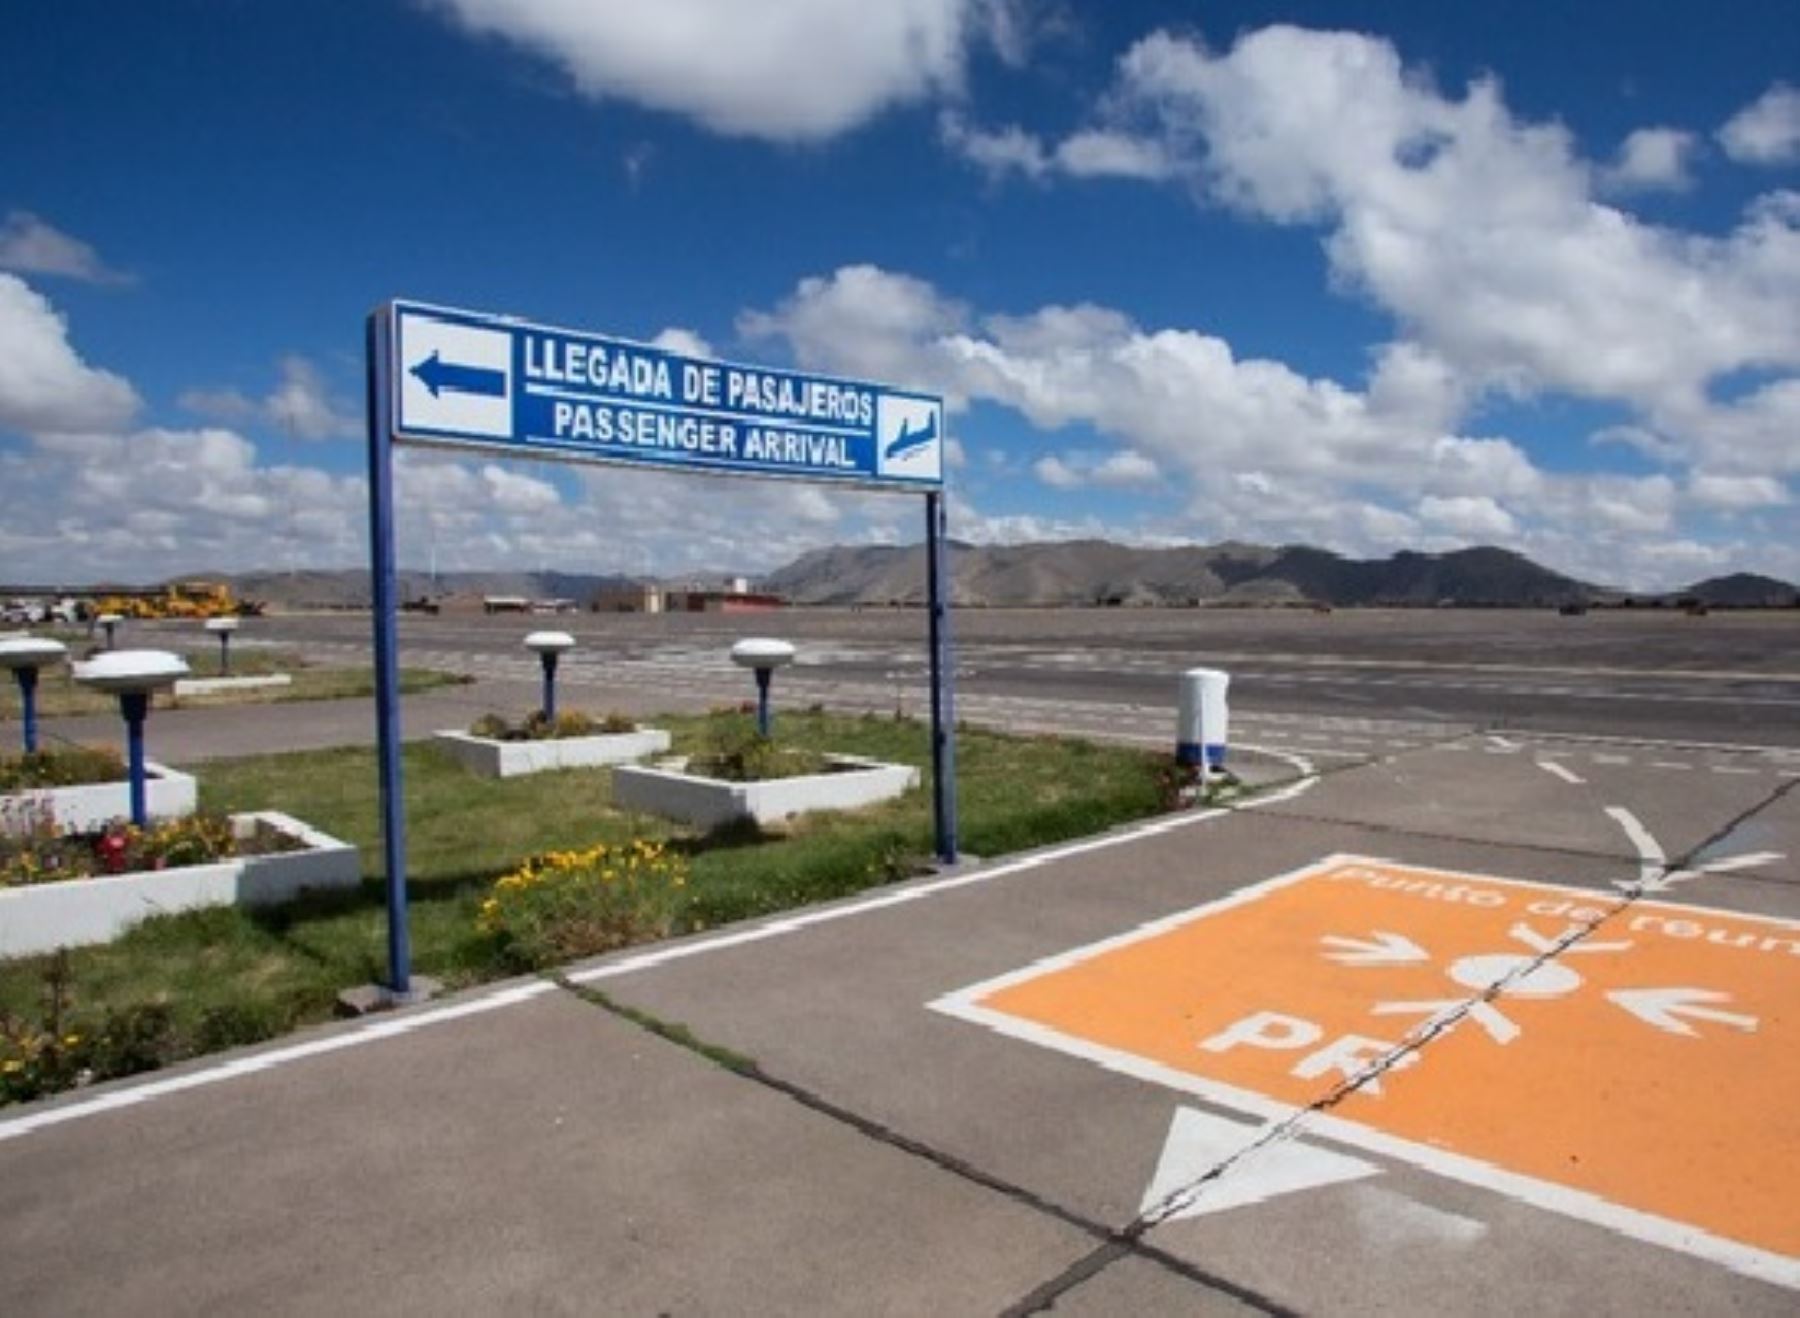 El aeropuerto de Juliaca reanuda desde hoy sus operaciones tras permanecer cerrado por 15 días para realizar labores de reparación de la pista de aterrizaje. Foto: ANDINA/difusión.